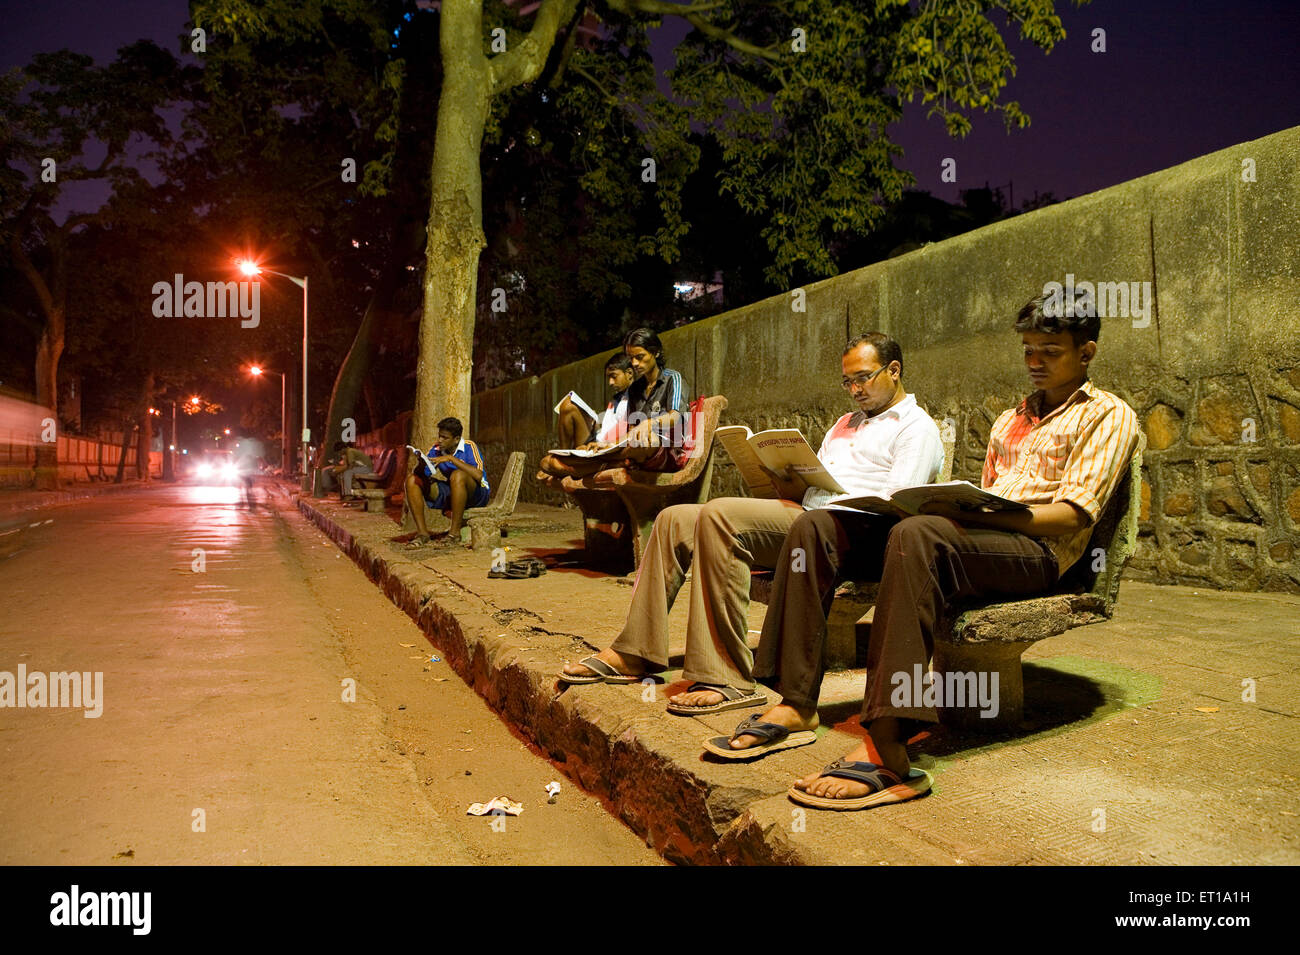 Étudiants étudiant sous la lumière de la rue sur la chaussée, Abhiyas Galli, Bombay, Mumbai, Maharashtra,Inde, Asie, Asie, Indien Banque D'Images